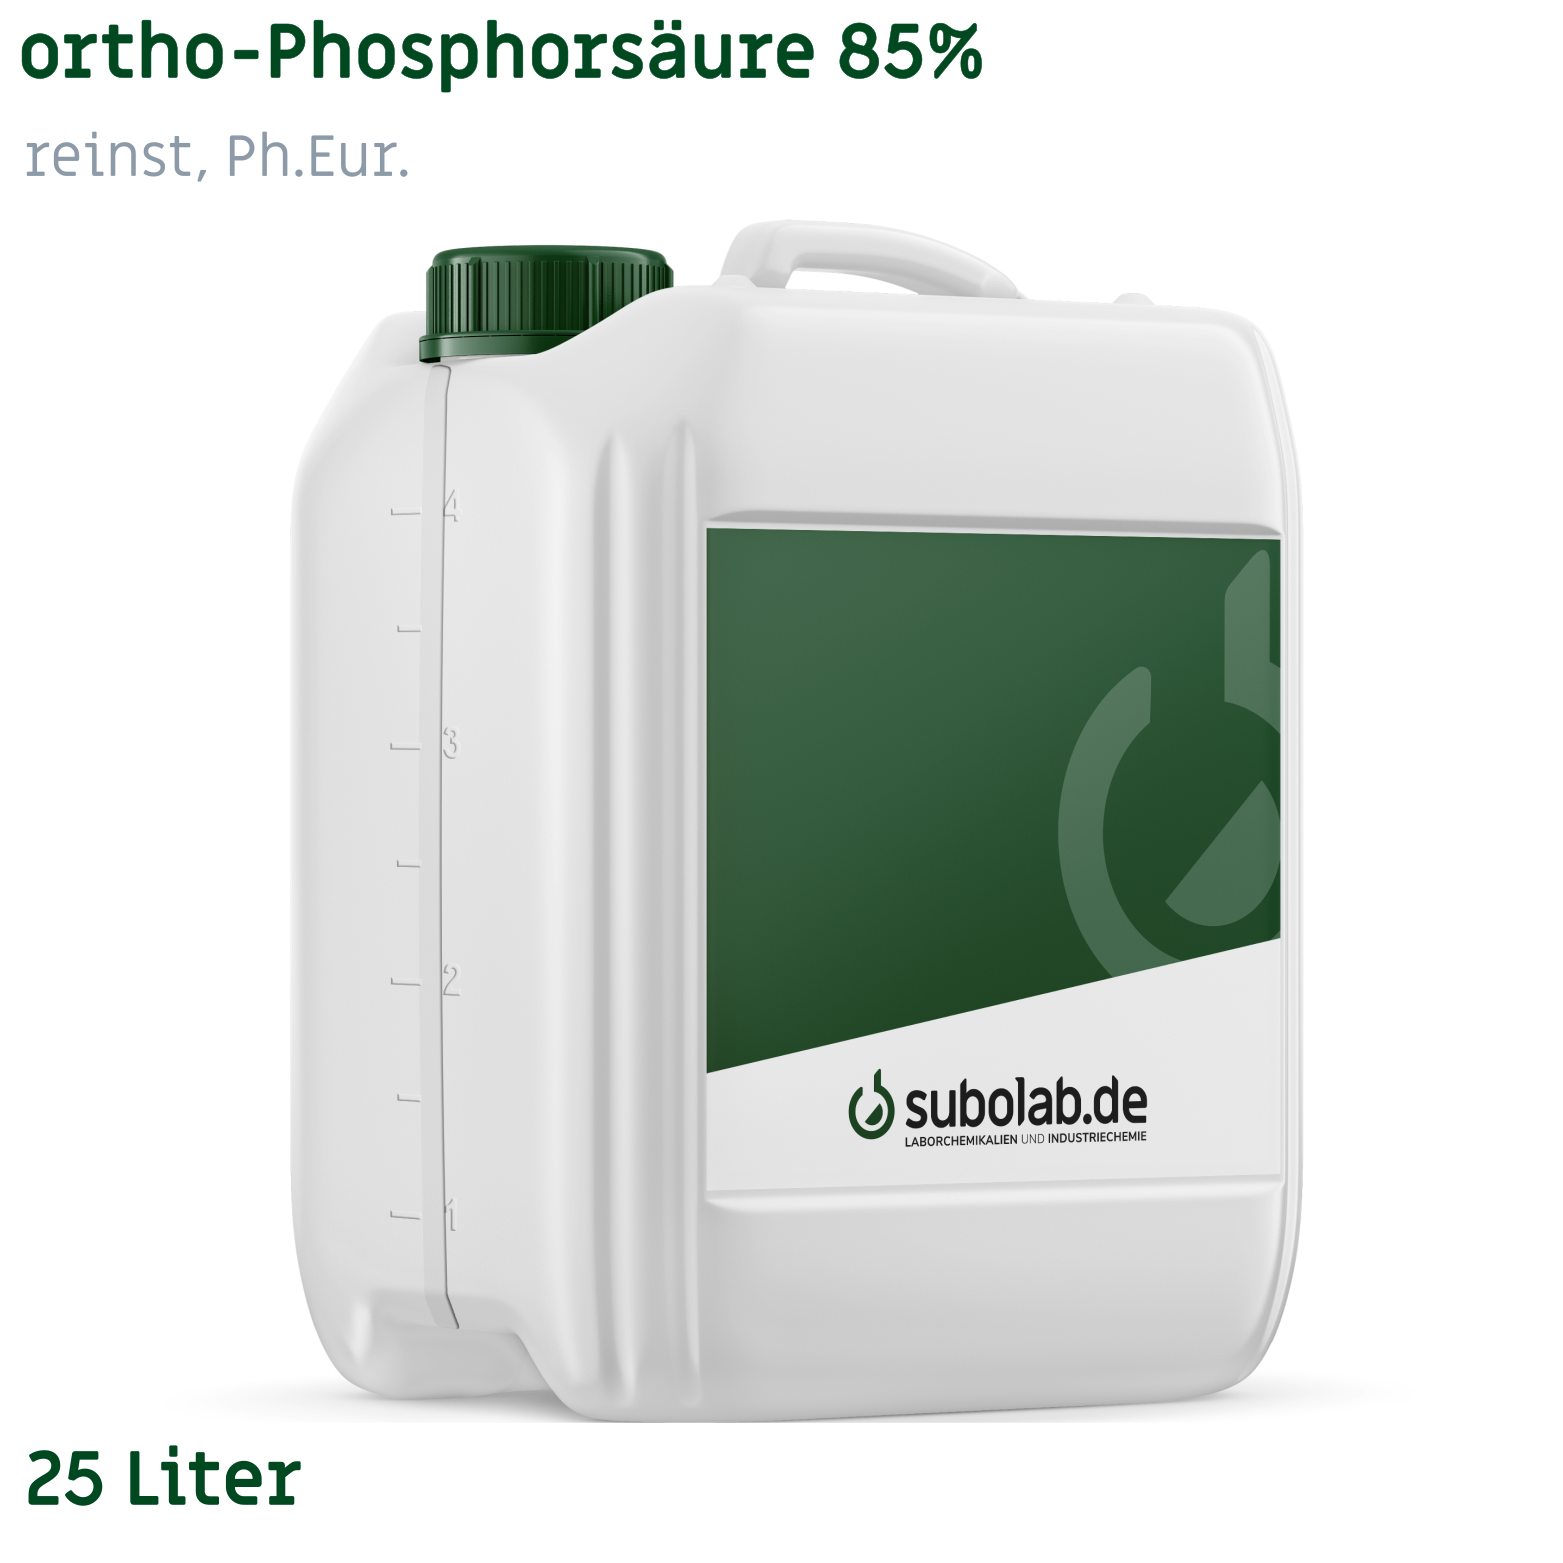 Bild von ortho-Phosphorsäure 85% reinst, Ph.Eur. (25 Liter)